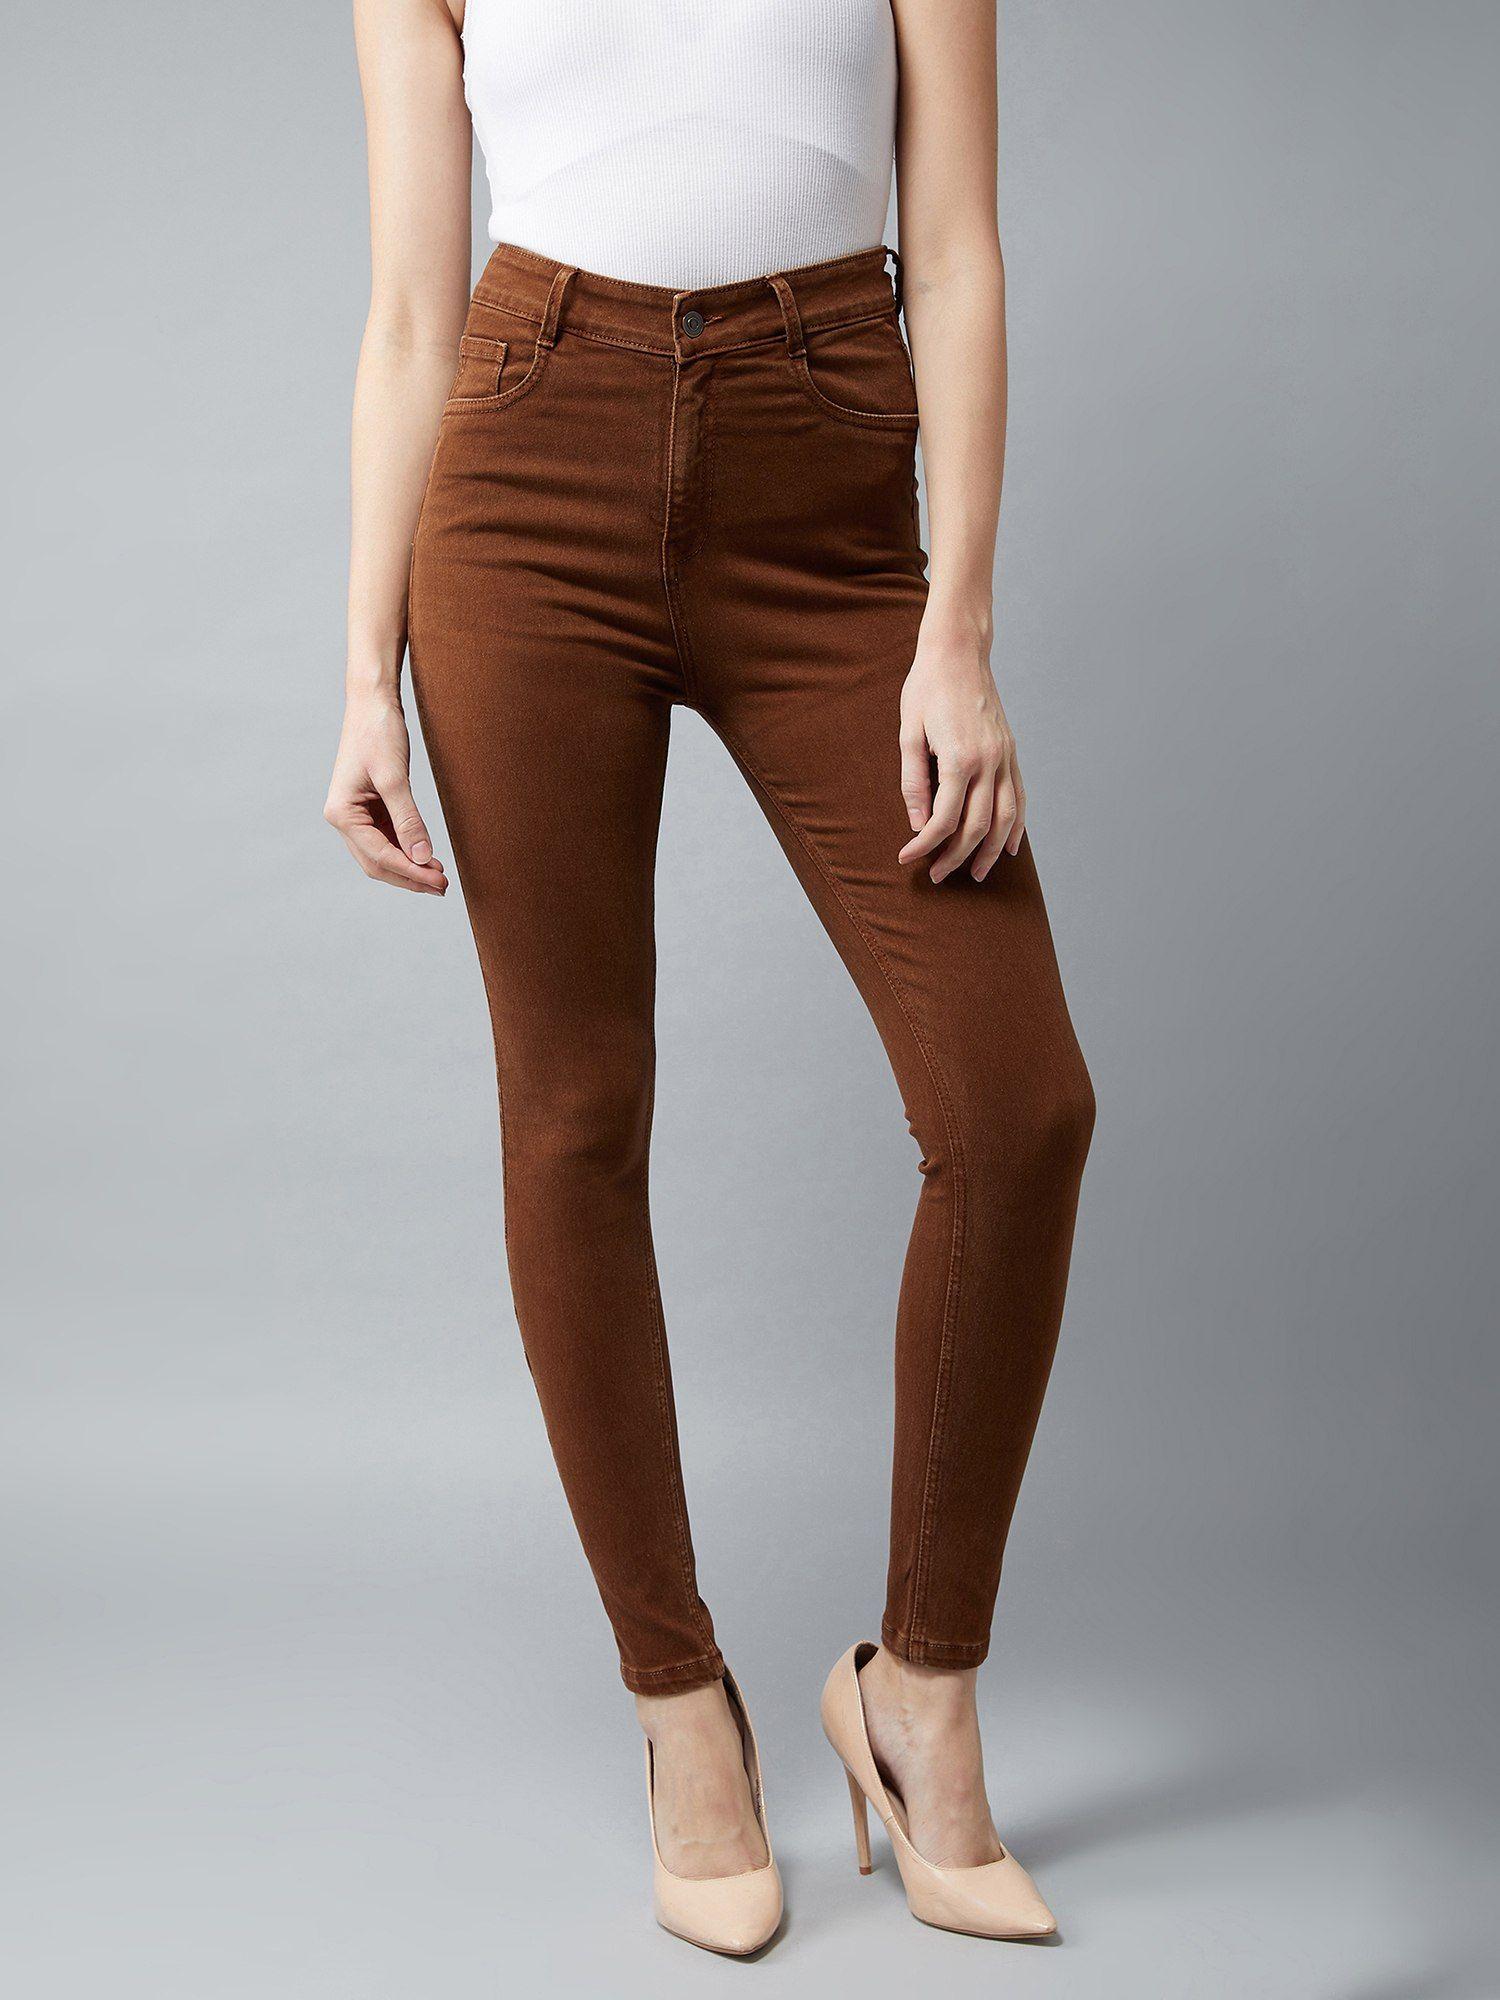 brown skinny high rise denim jeans